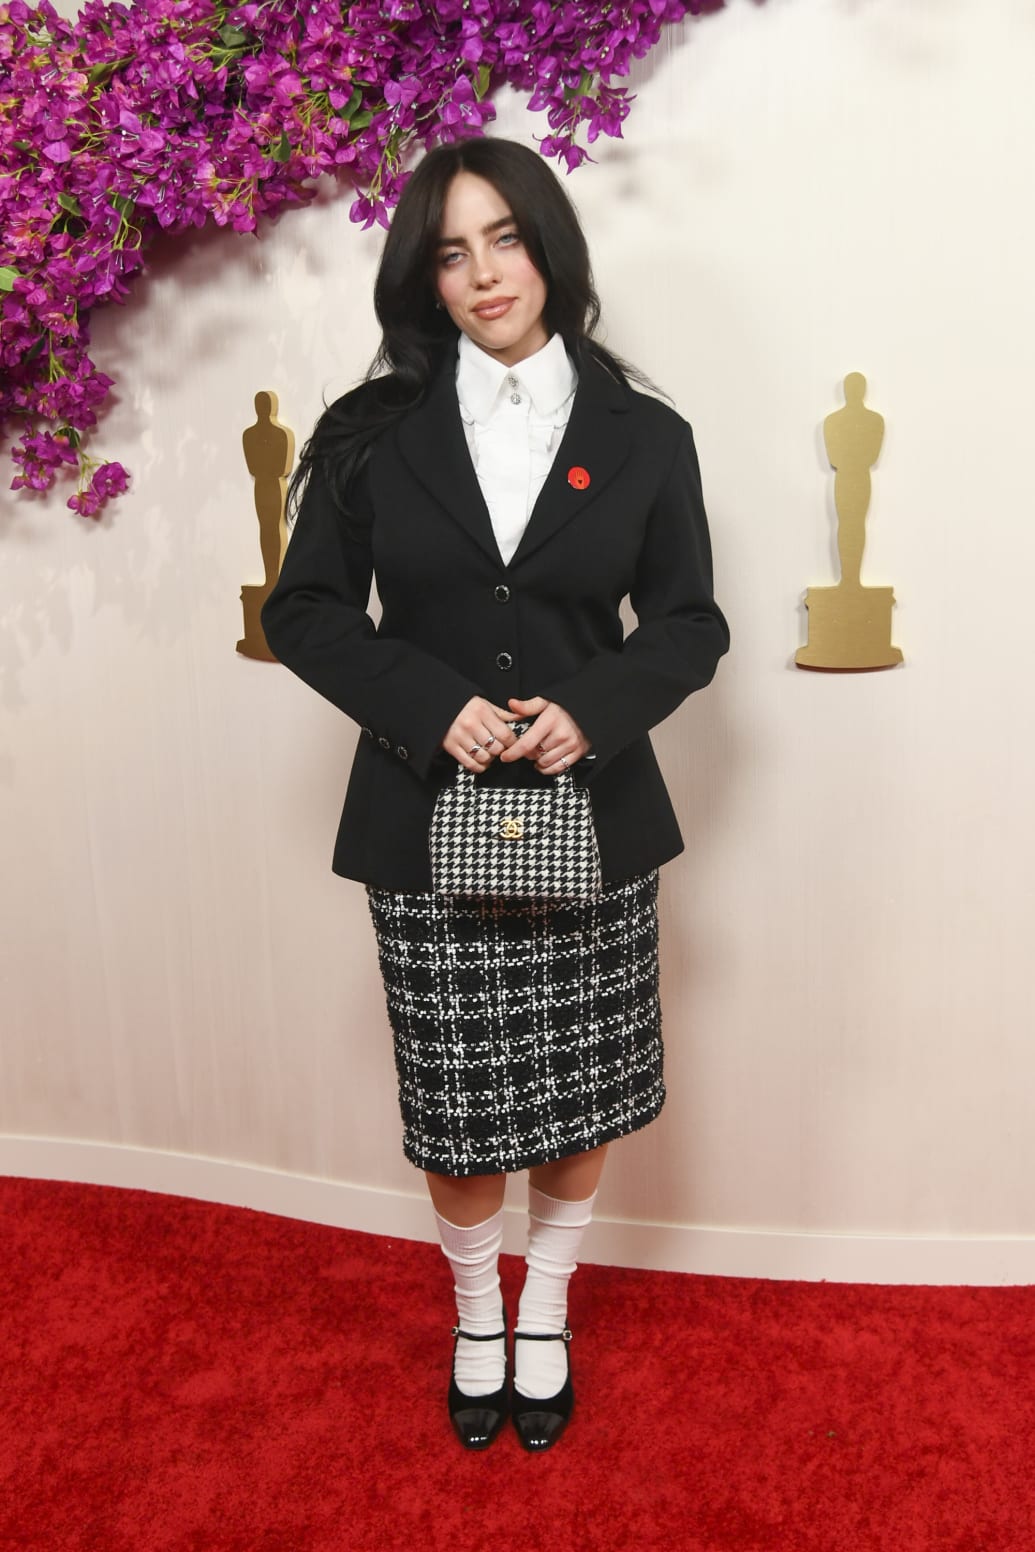 Billie Eilish at the Oscars 